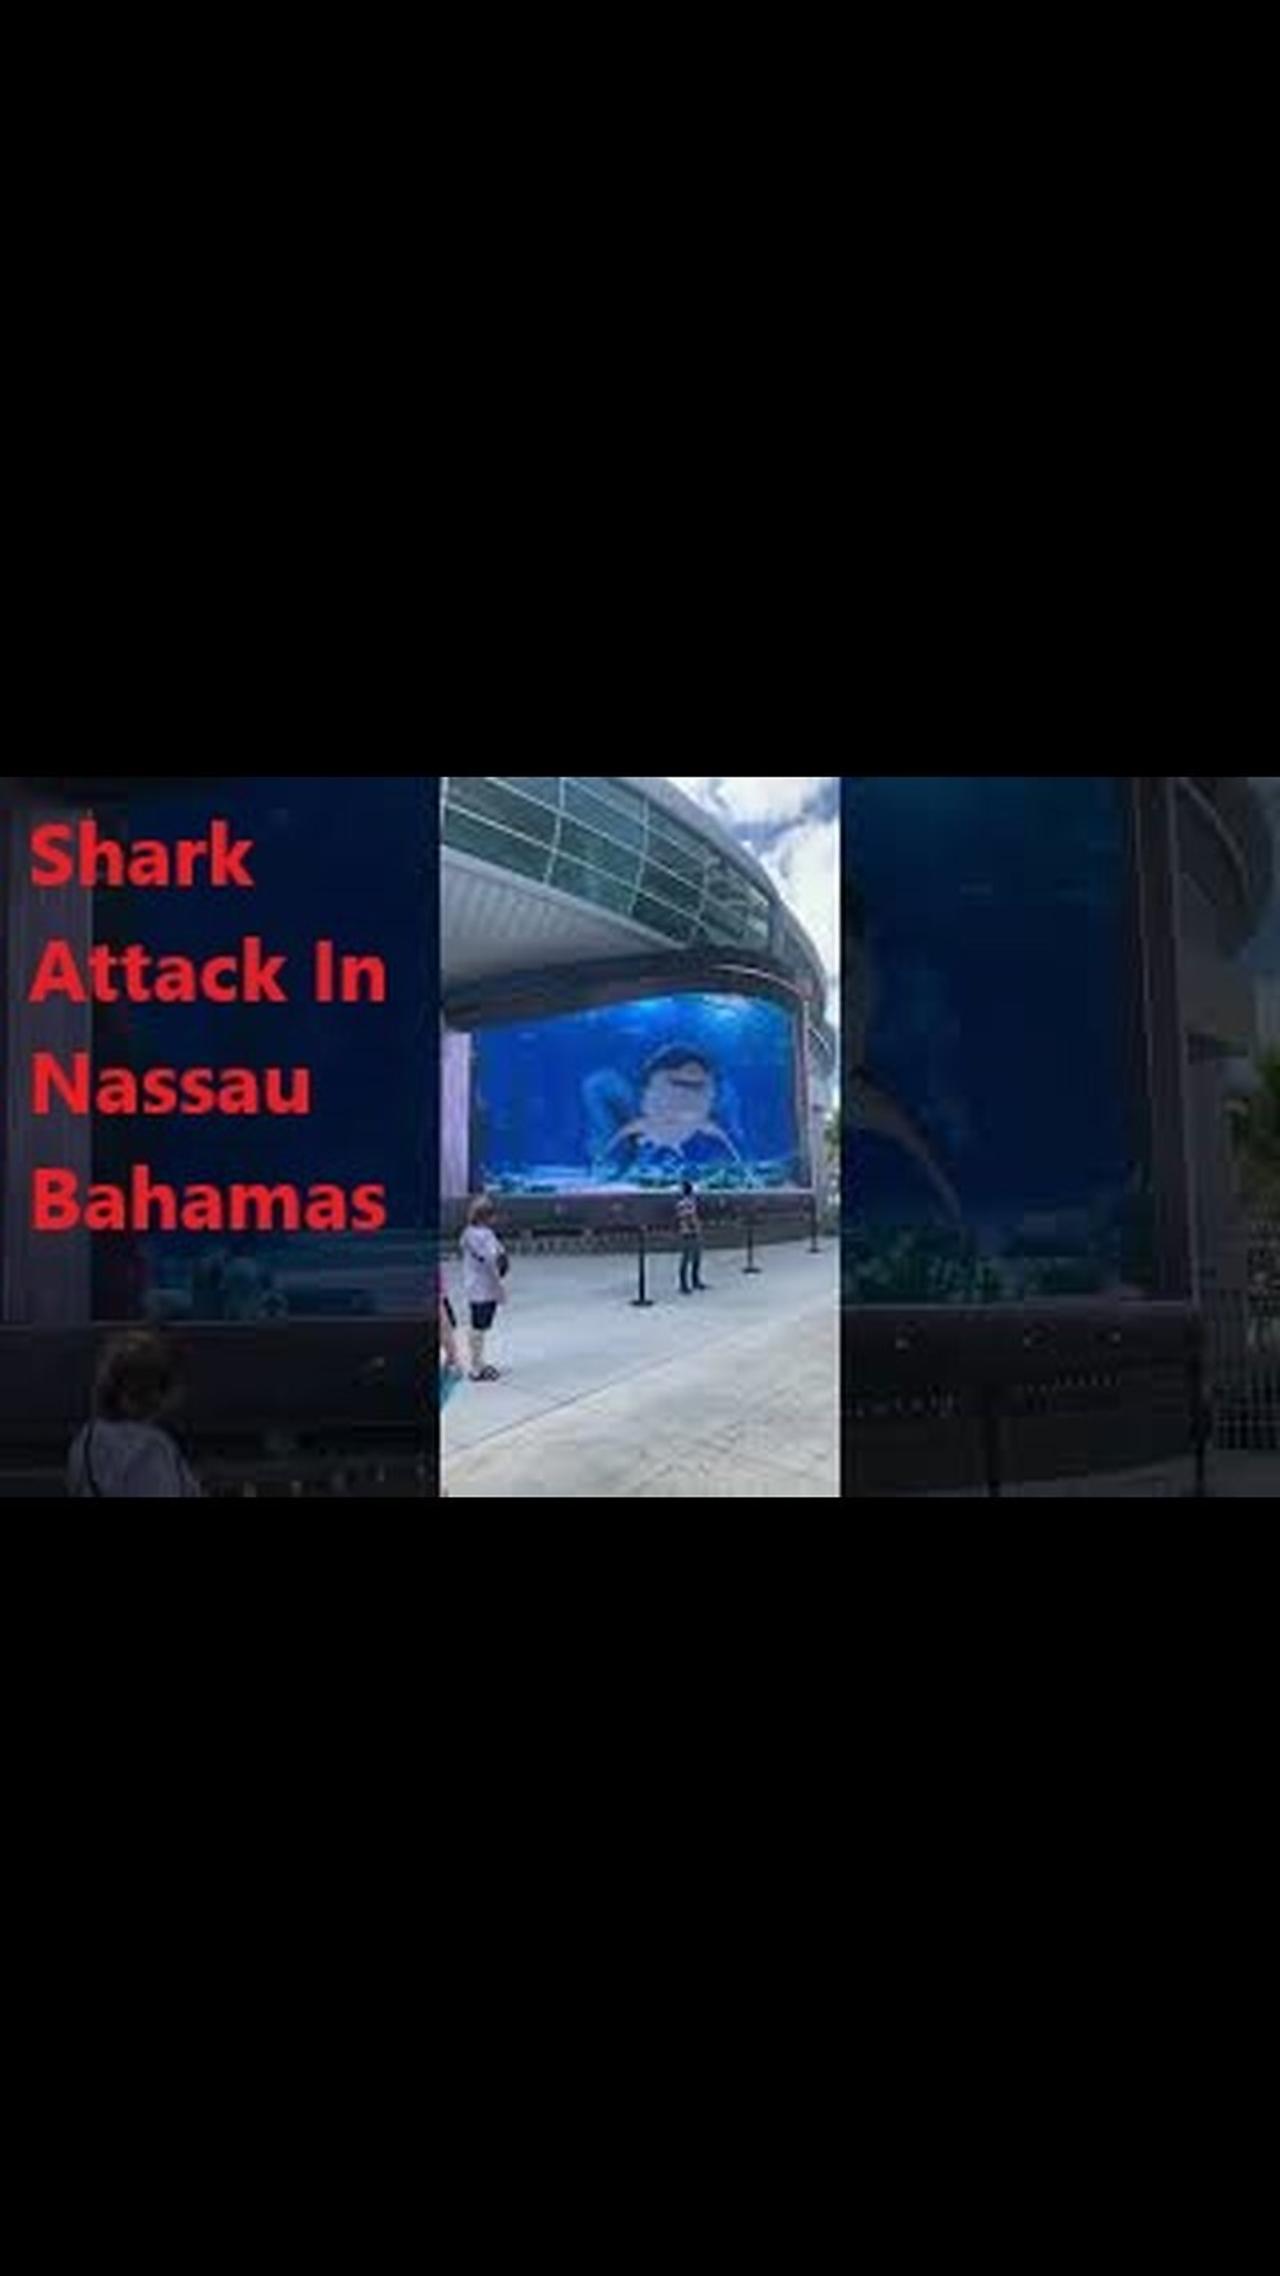 Shark Attack In Nassau Bahamas